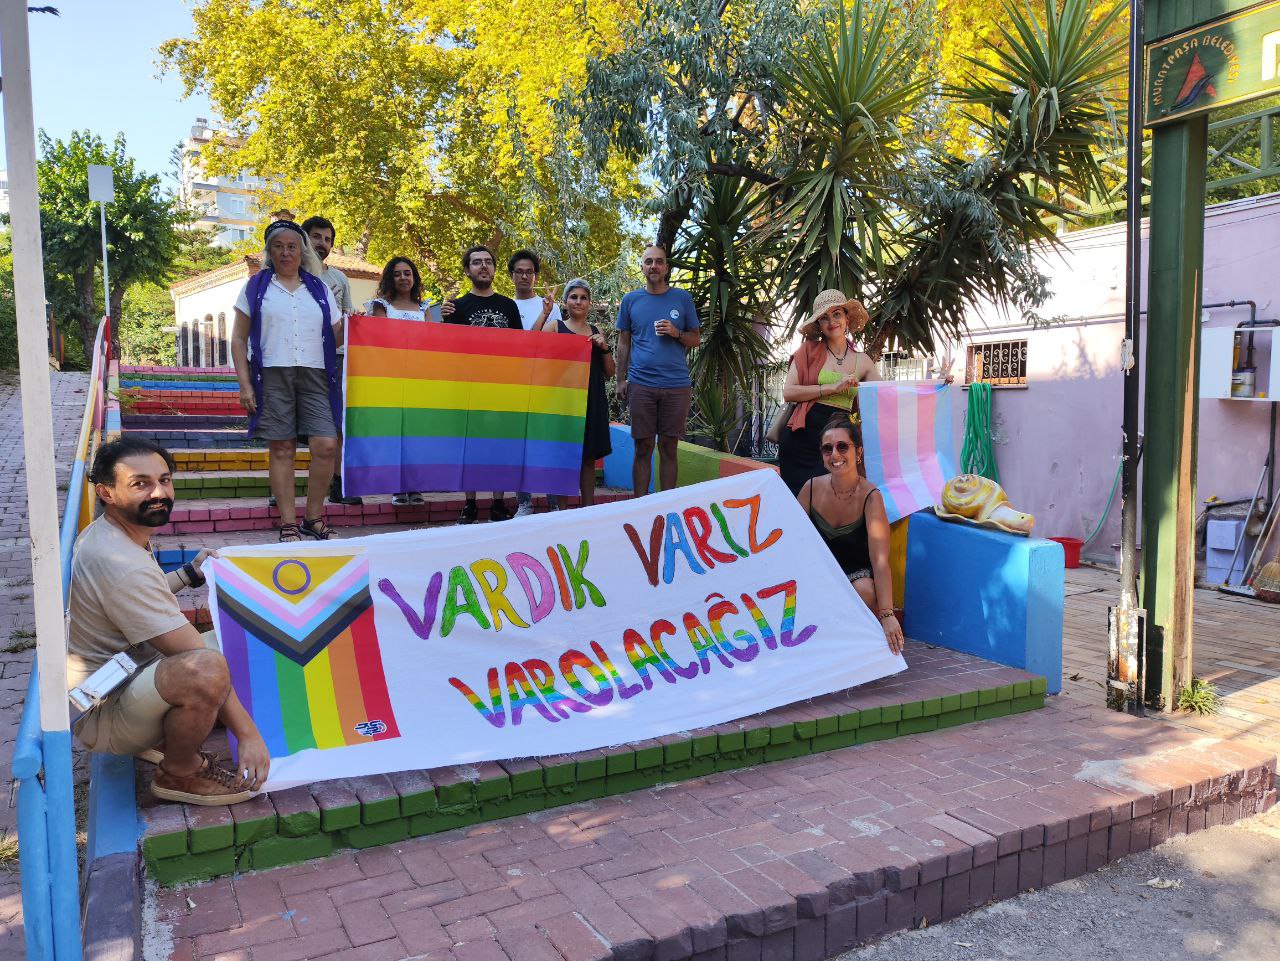 Antalya 10. Onur Ayı etkinlikleri tamamlandı: “Kesişmeden Duramıyoruz” | Kaos GL - LGBTİ+ Haber Portalı